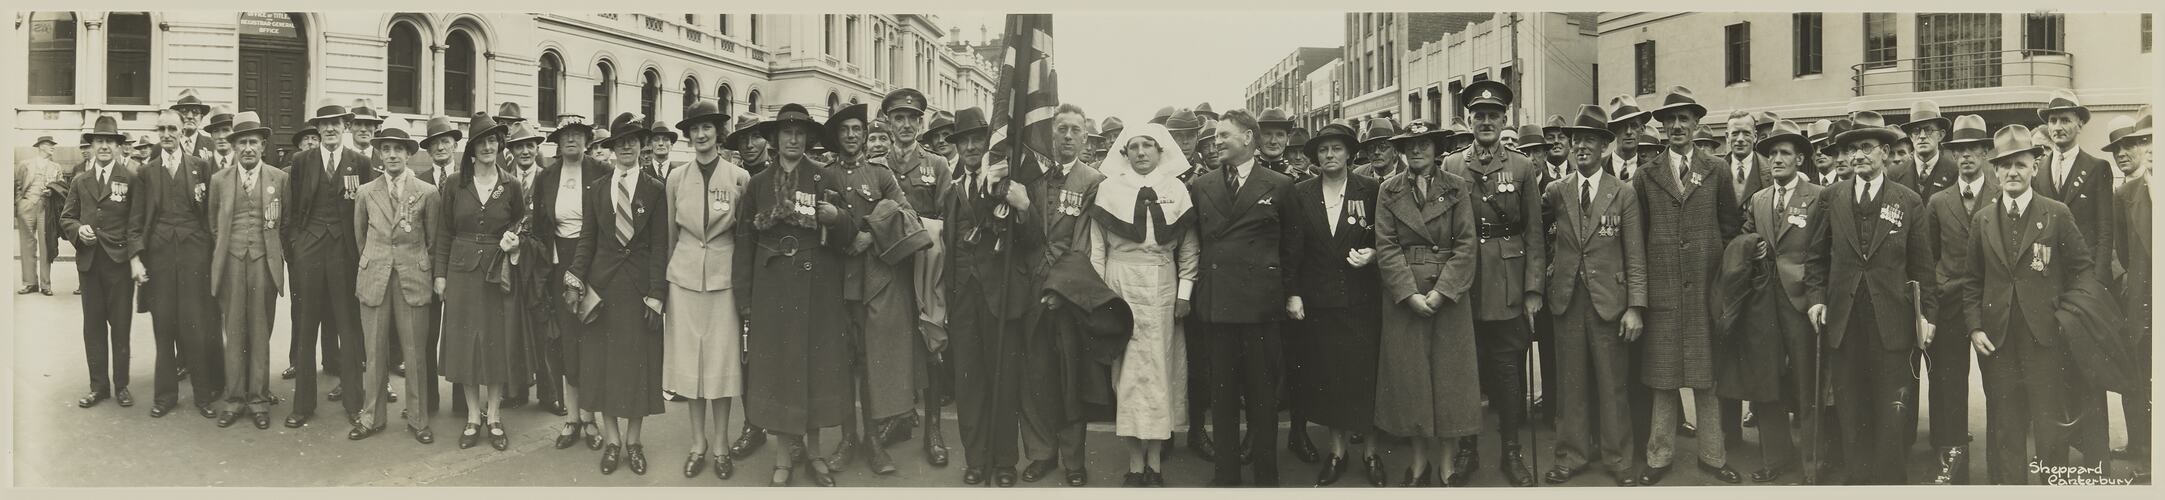 Anzac Day Marchers, Melbourne, circa 1930s